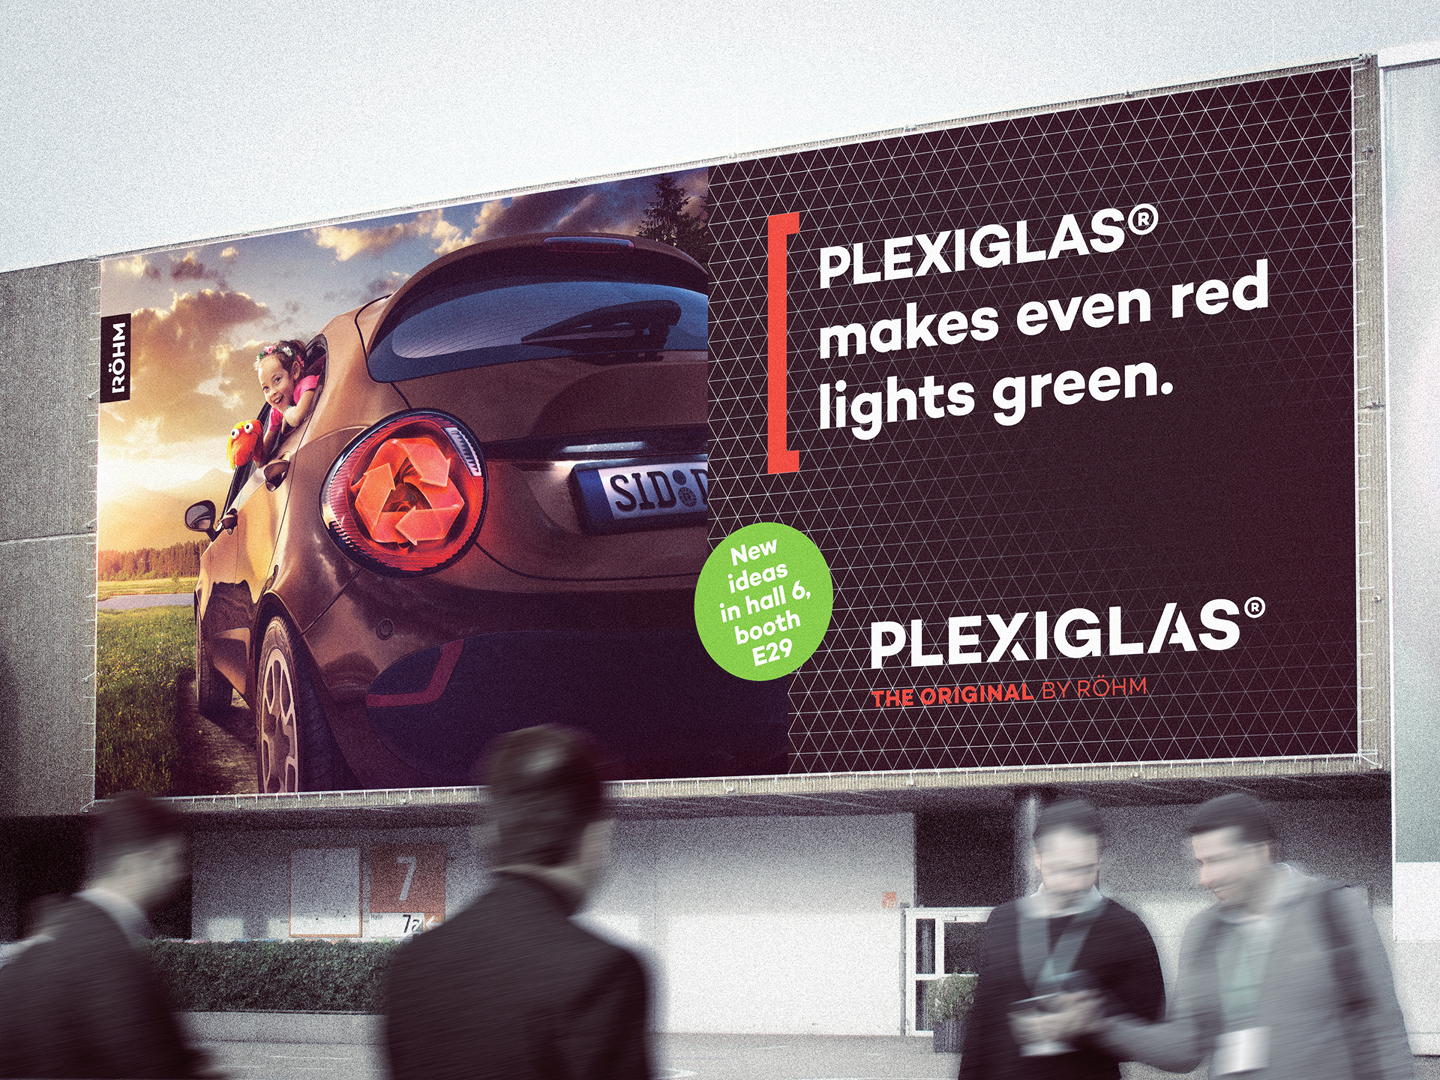 Plakat für PLEXIGLAS®: Ein Auto hat ein Recycling-Zeichen als Rückleuchte